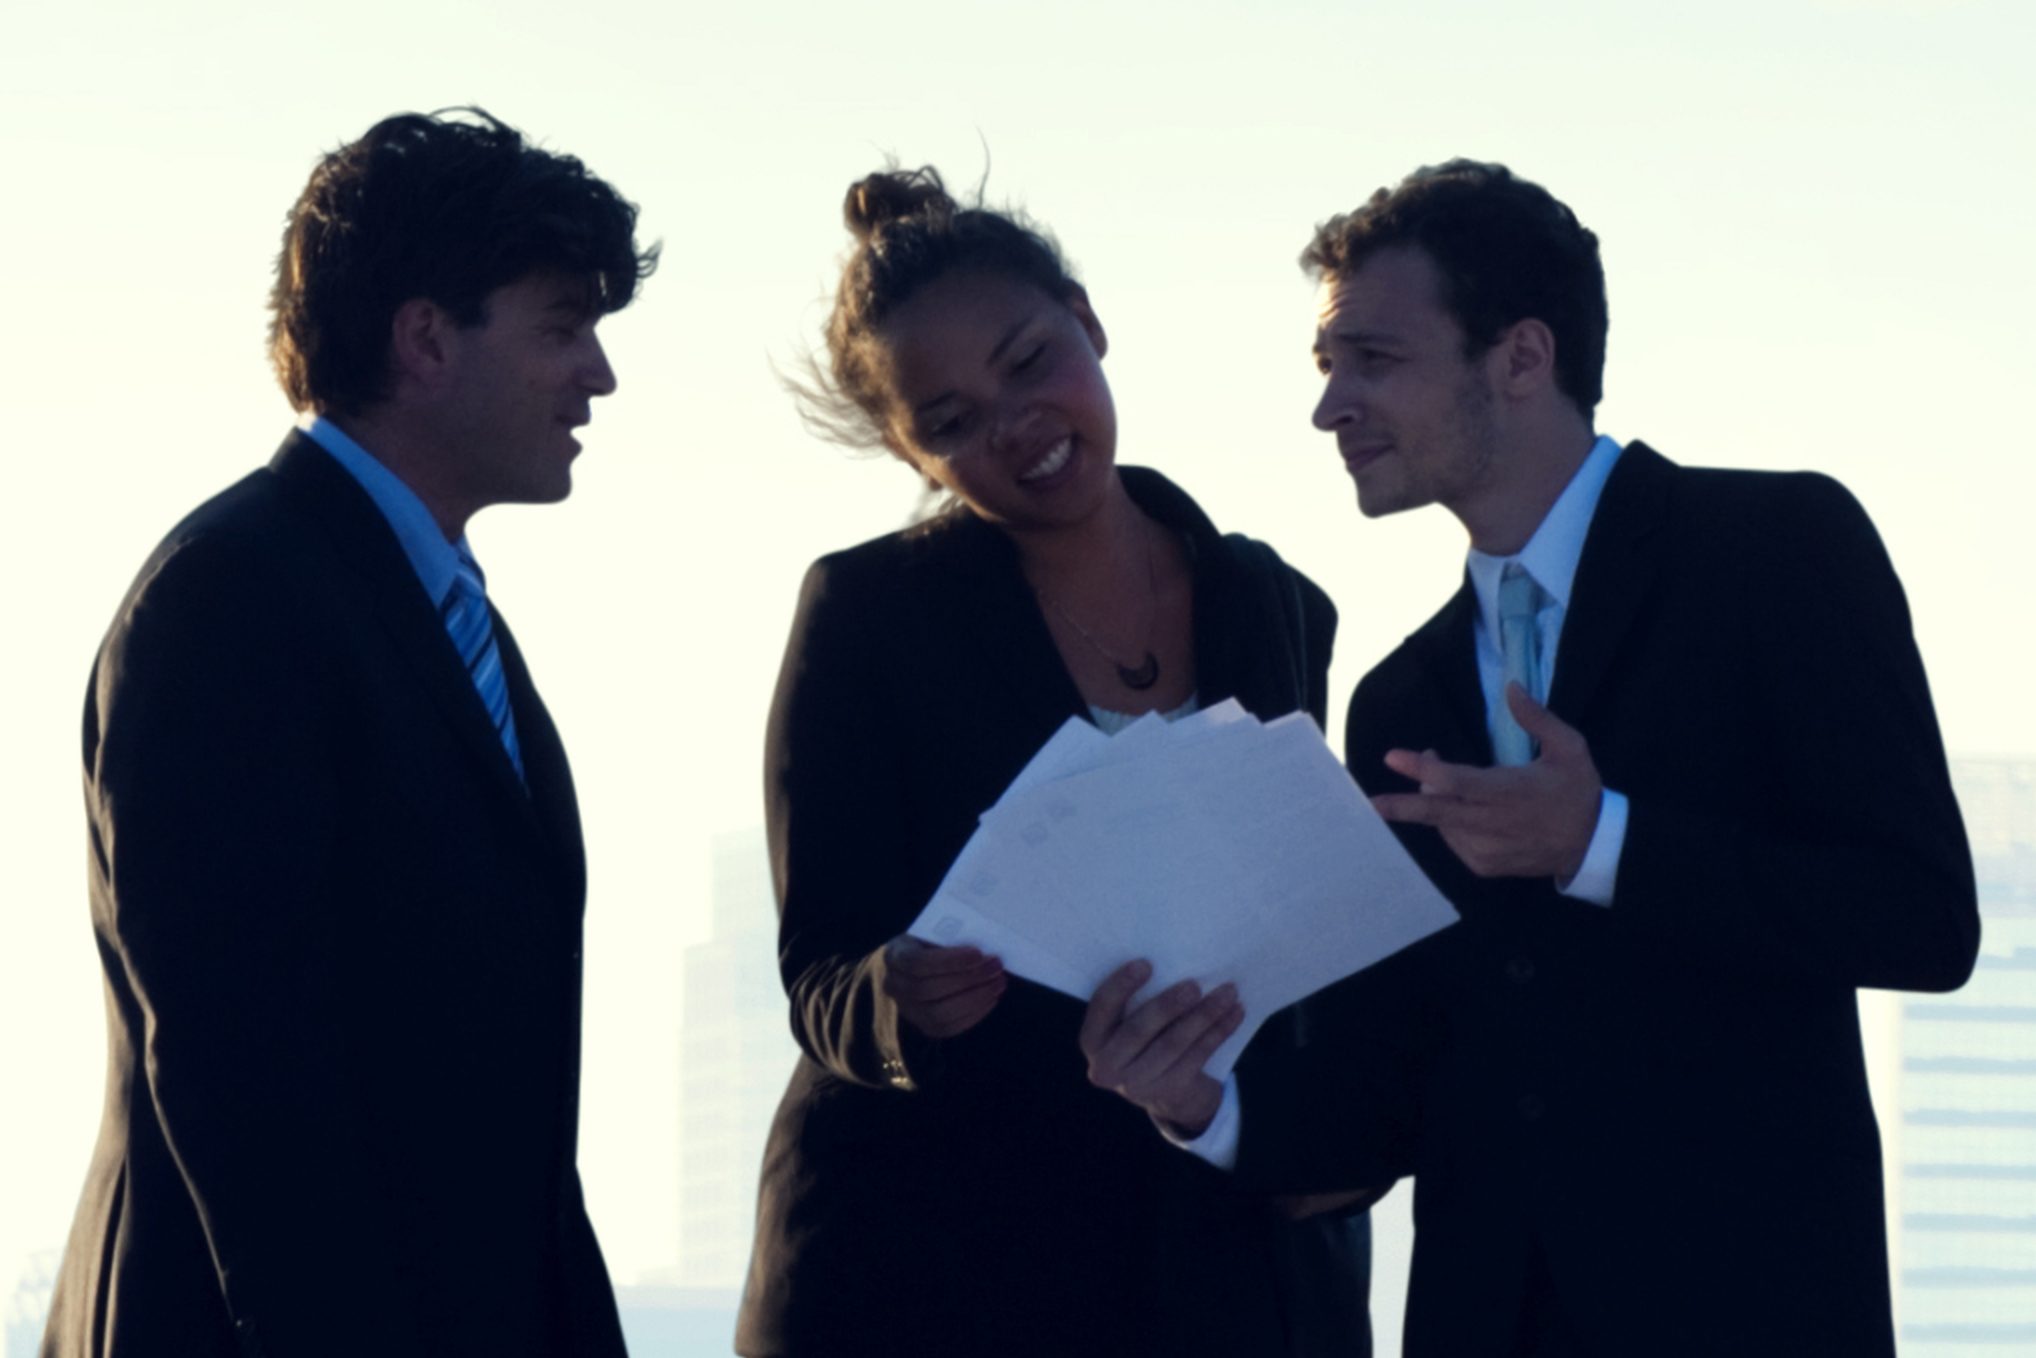 Three business professionals talking